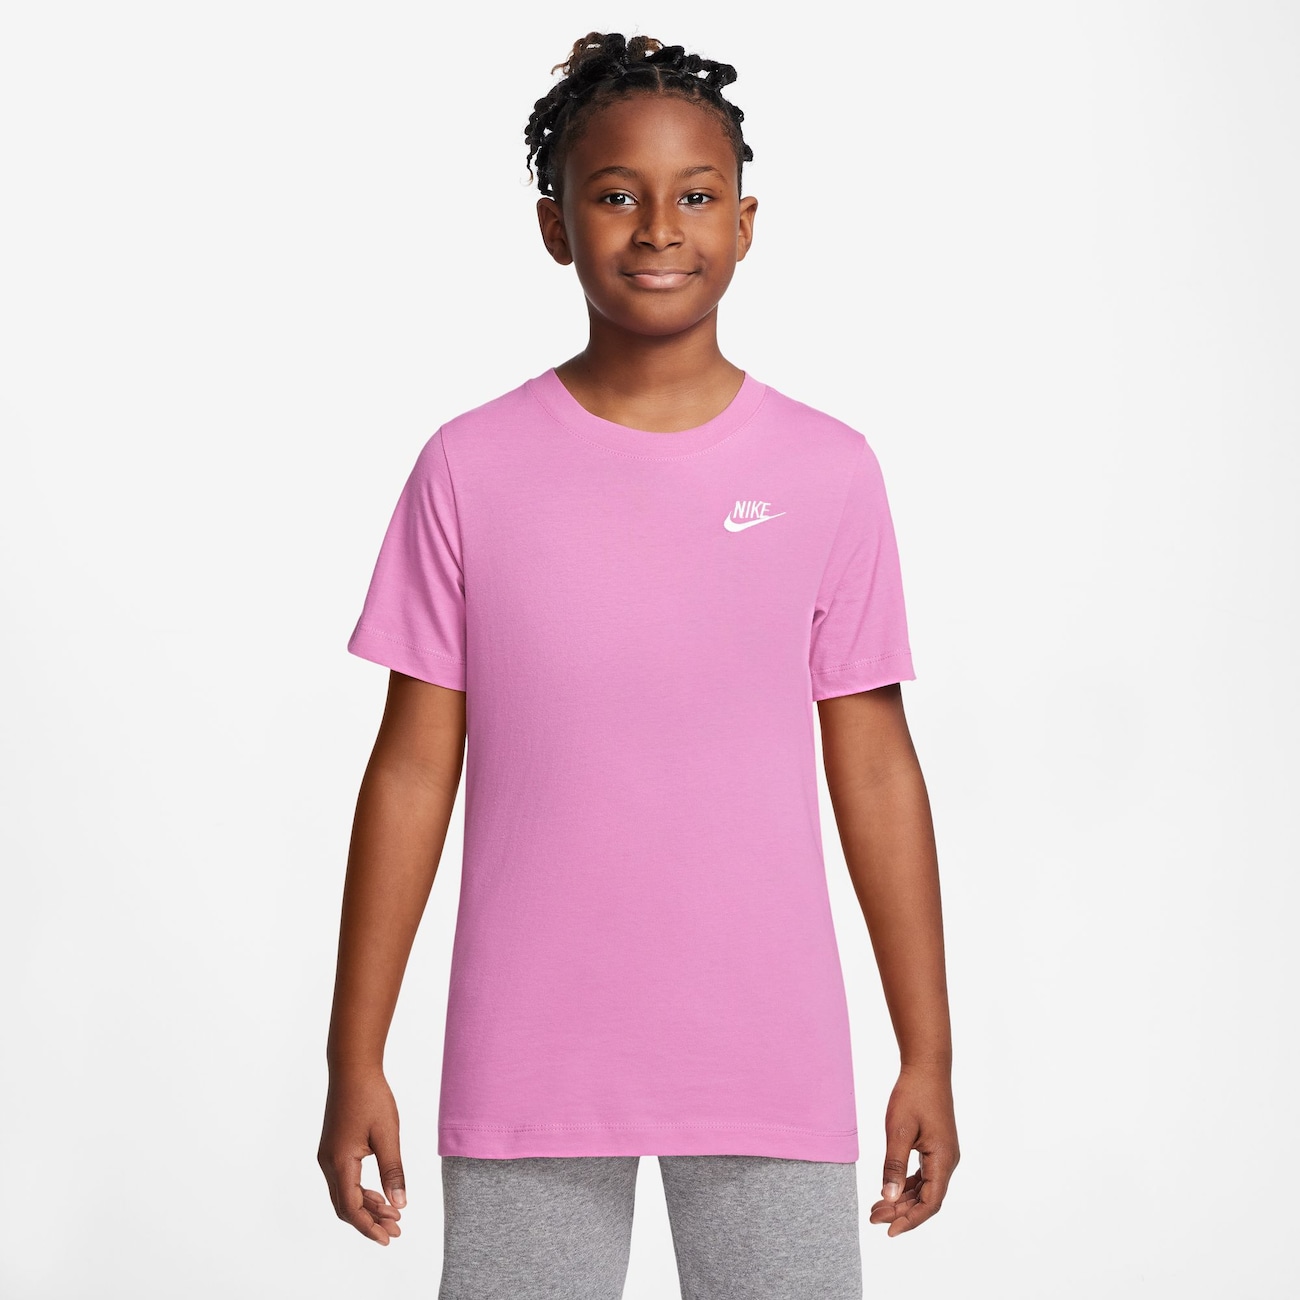 Camiseta Nike Futura Sportswear Infantil Verde  Tennis Action - Loja  especializada em Beach Tênis e Tennis